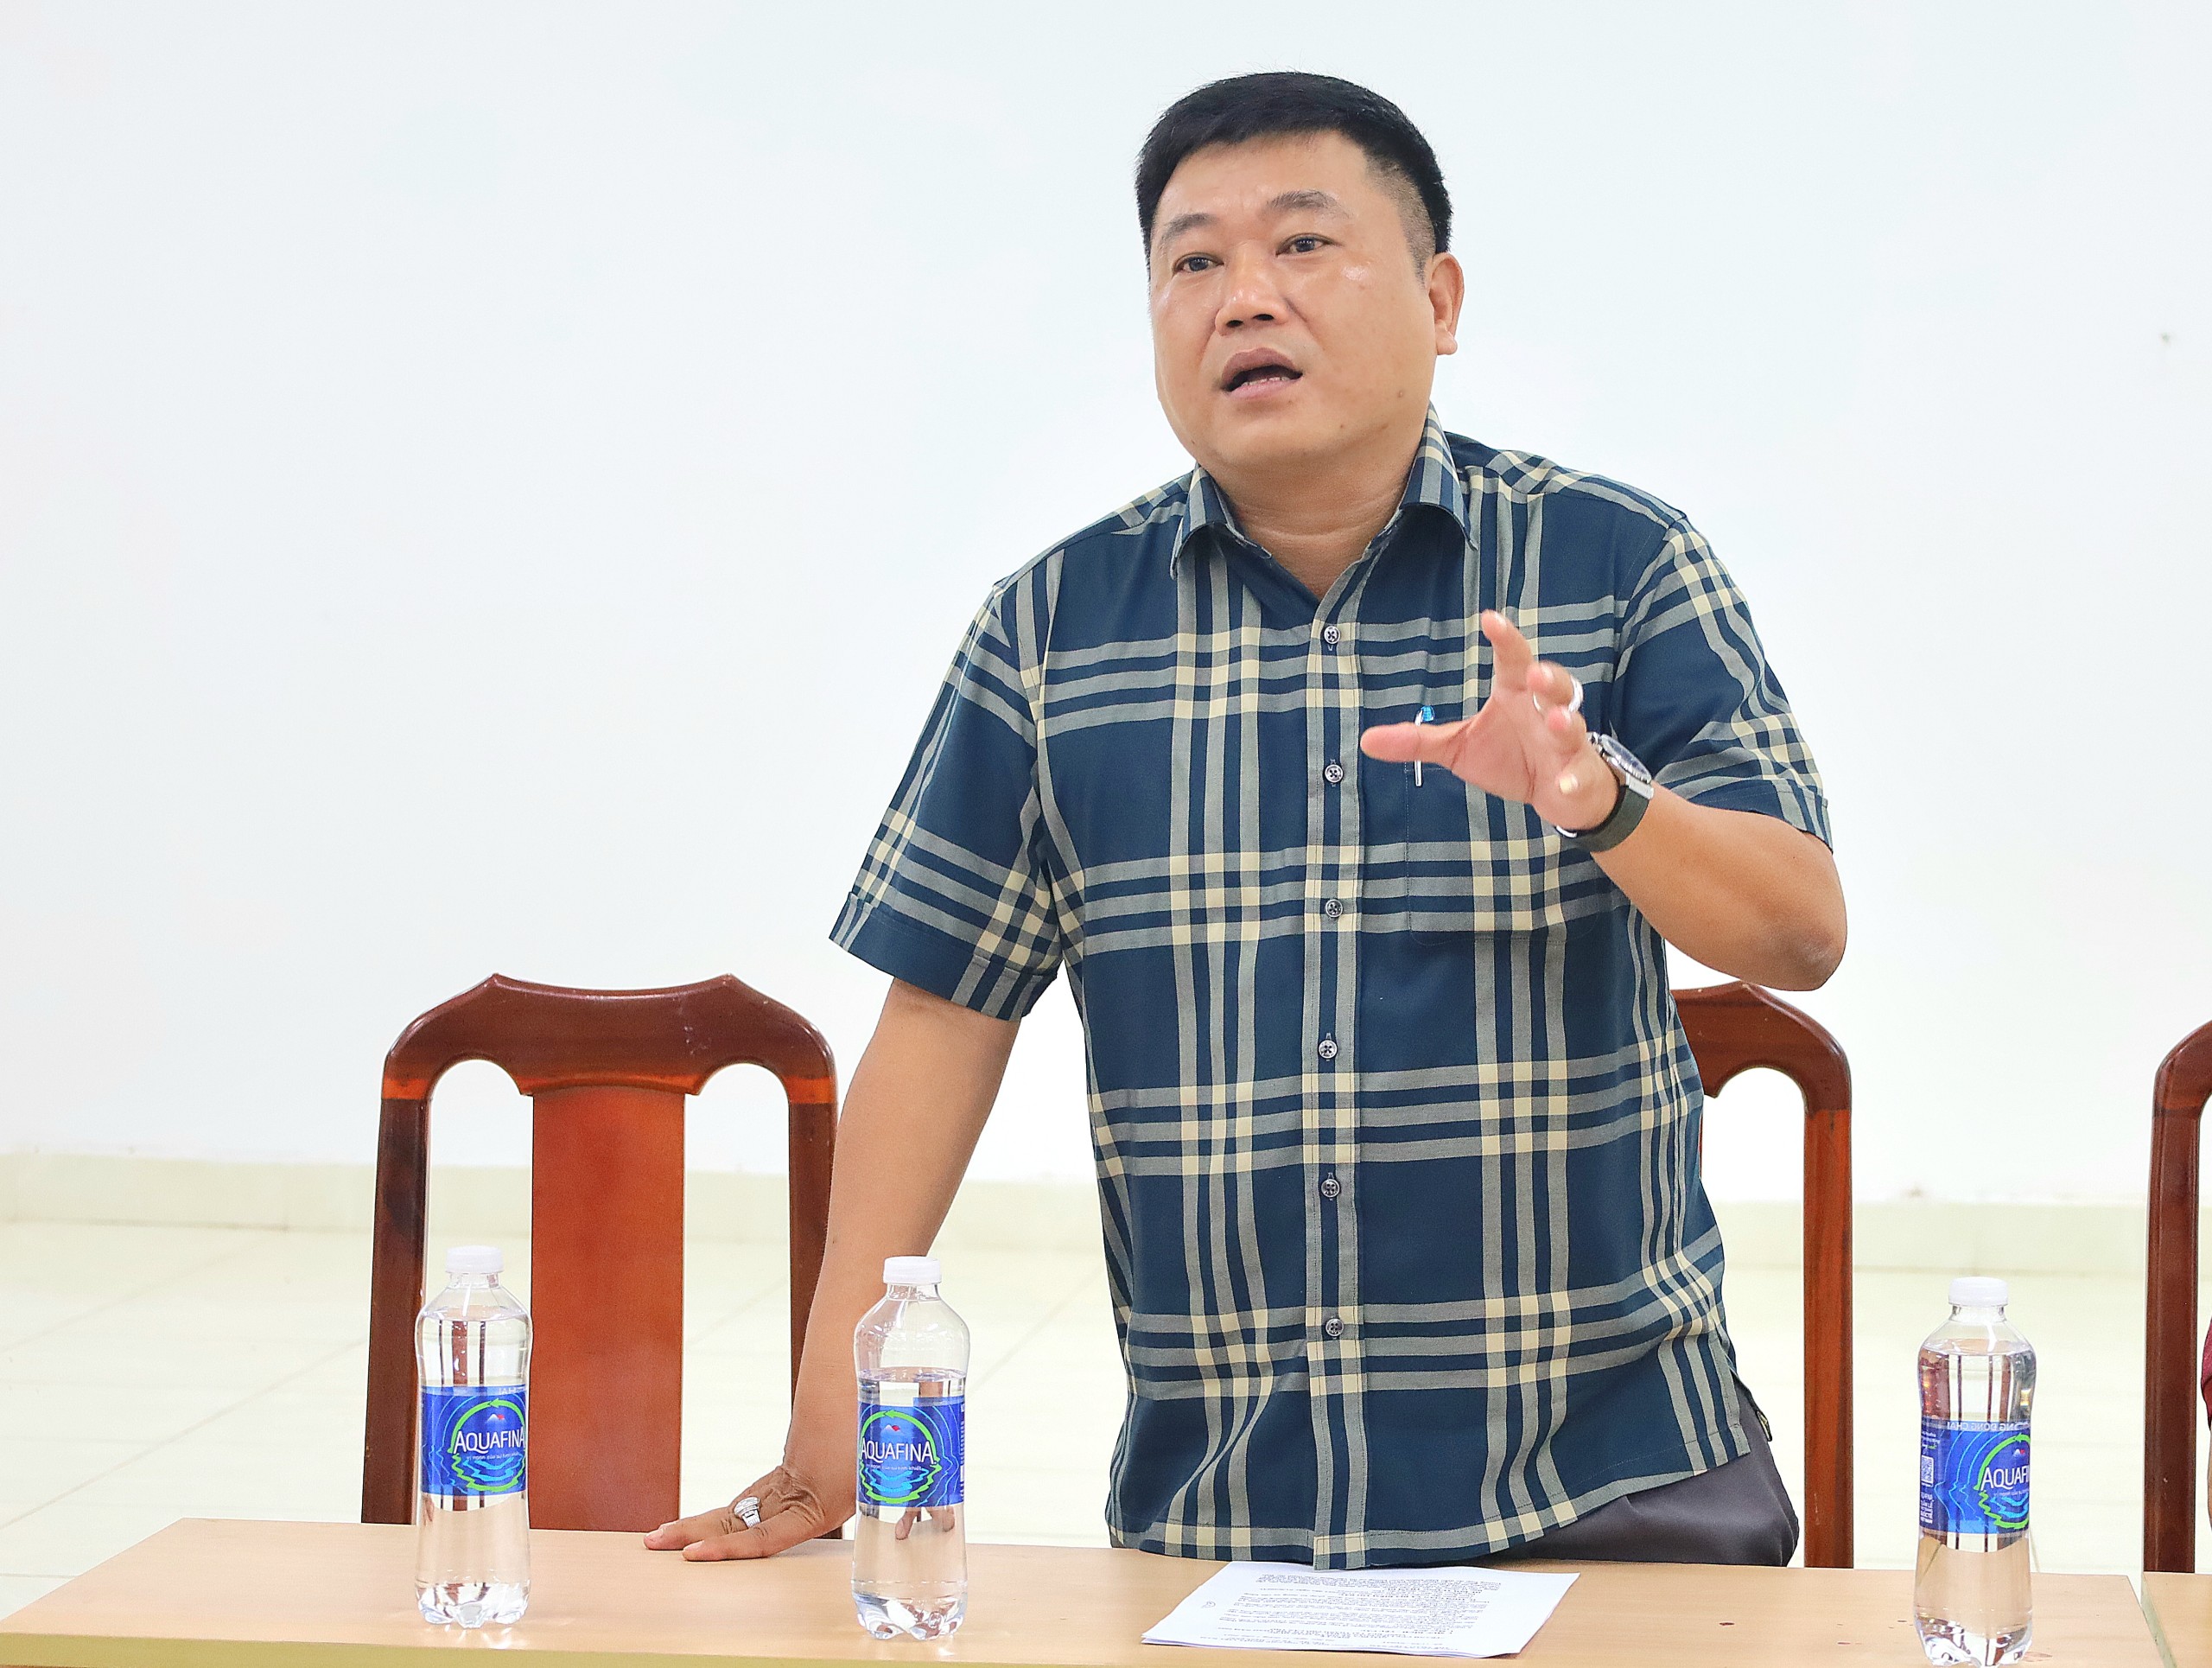 Thiếu tá Phạm Thanh Bình – Trưởng Công an phường Cái Khế, quận Ninh Kiều thông tin yêu cầu về việc đảm bảo ANTT, ATGT cho các vận động viên tham dự giải.